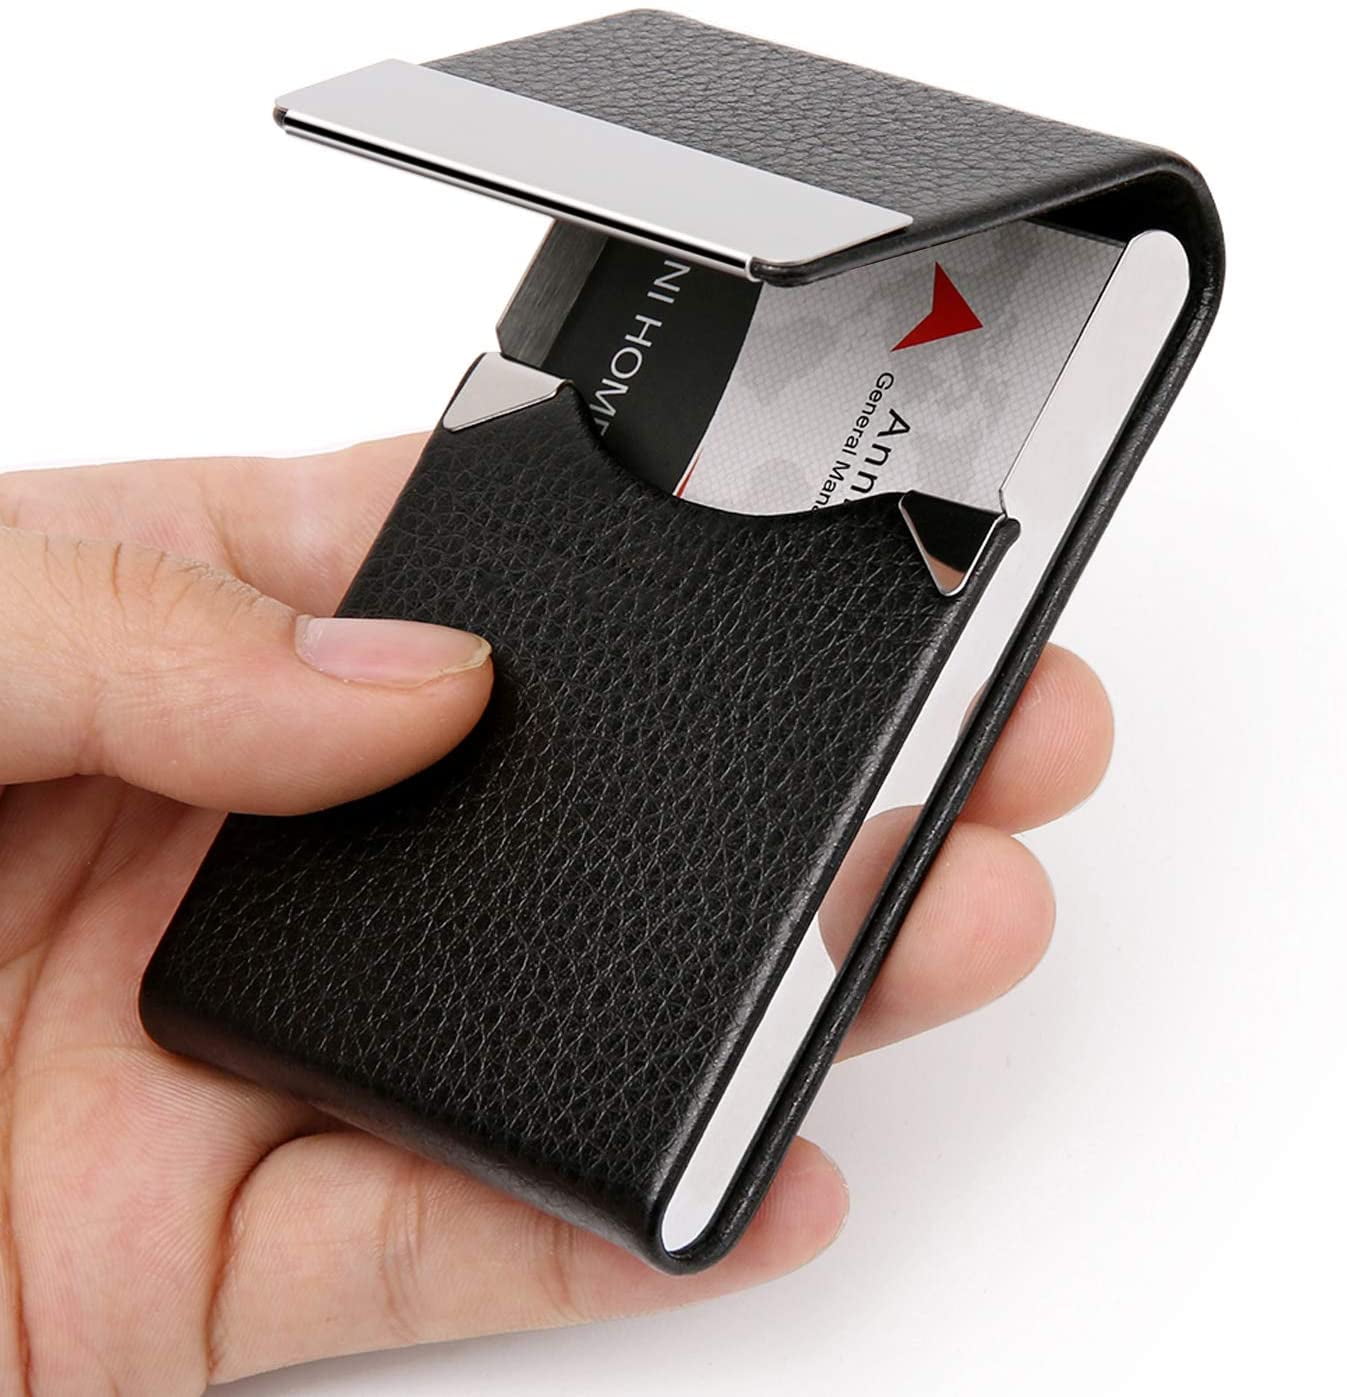 Business Card Holder Case - PU Leather Business Card Case Name Card Holder  Slim Metal Pocket Card Holder with Magnetic Shut, Black 